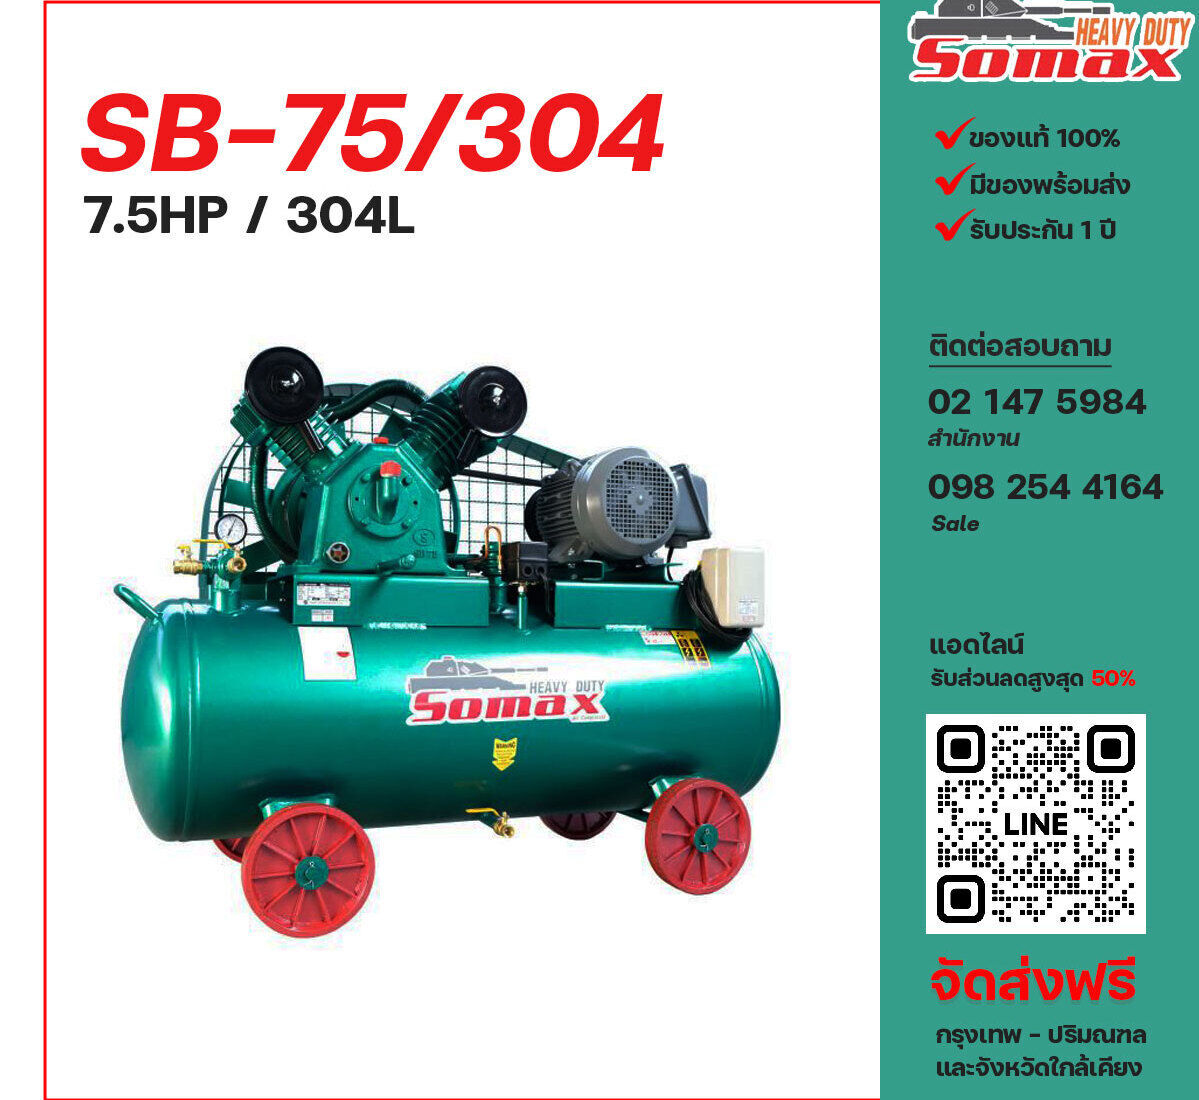 ปั๊มลมโซแม็กซ์ SOMAX SB-75/304 380V ปั๊มลมลูกสูบ ขนาด 2 สูบ 7.5 แรงม้า 304 ลิตร SOMAX พร้อมมอเตอร์ ไฟ 380V ส่งฟรี กรุงเทพฯ-ปริมณฑล รับประกัน 1 ปี